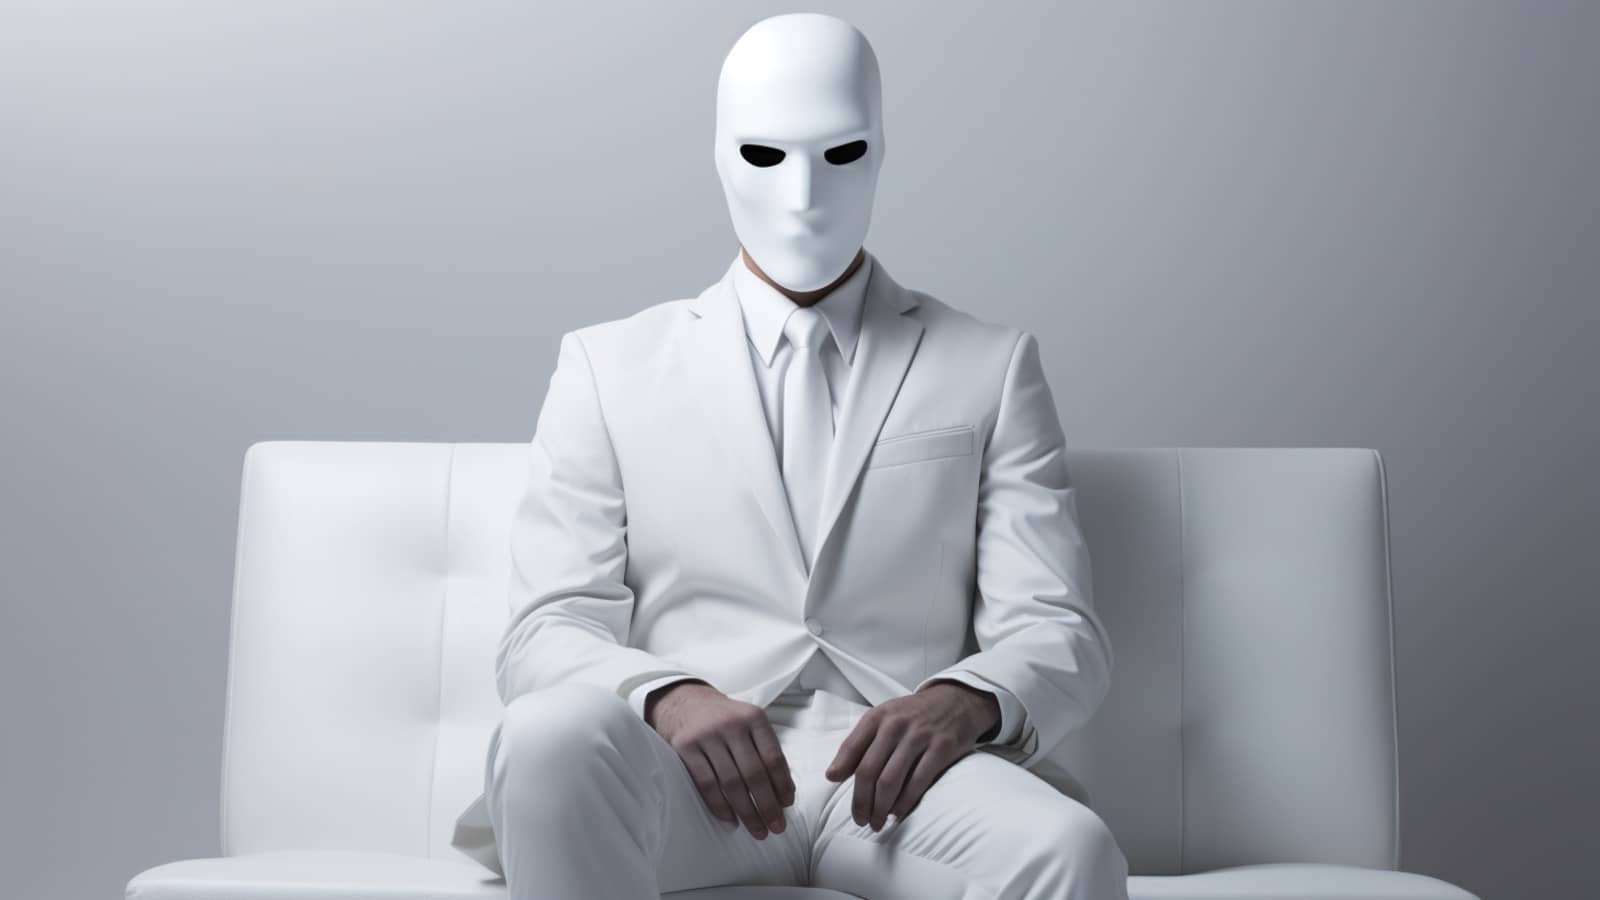 anonimowy mężczyzna ubrany cały na biało w białej masce
    
